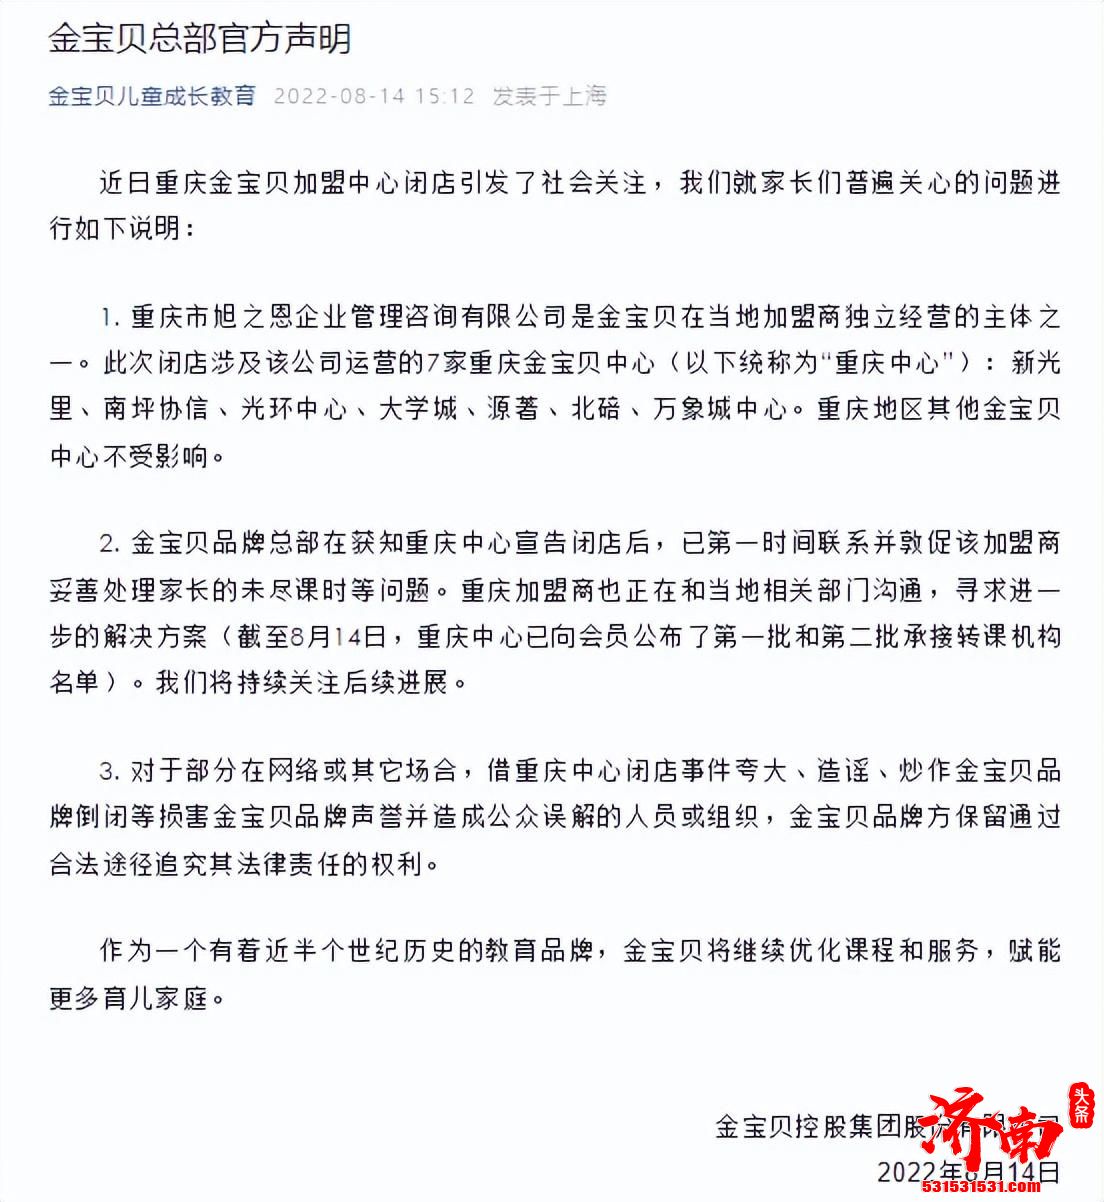 重庆金宝贝7家校区闭店依法进行破产清算 金宝贝总部发布声明